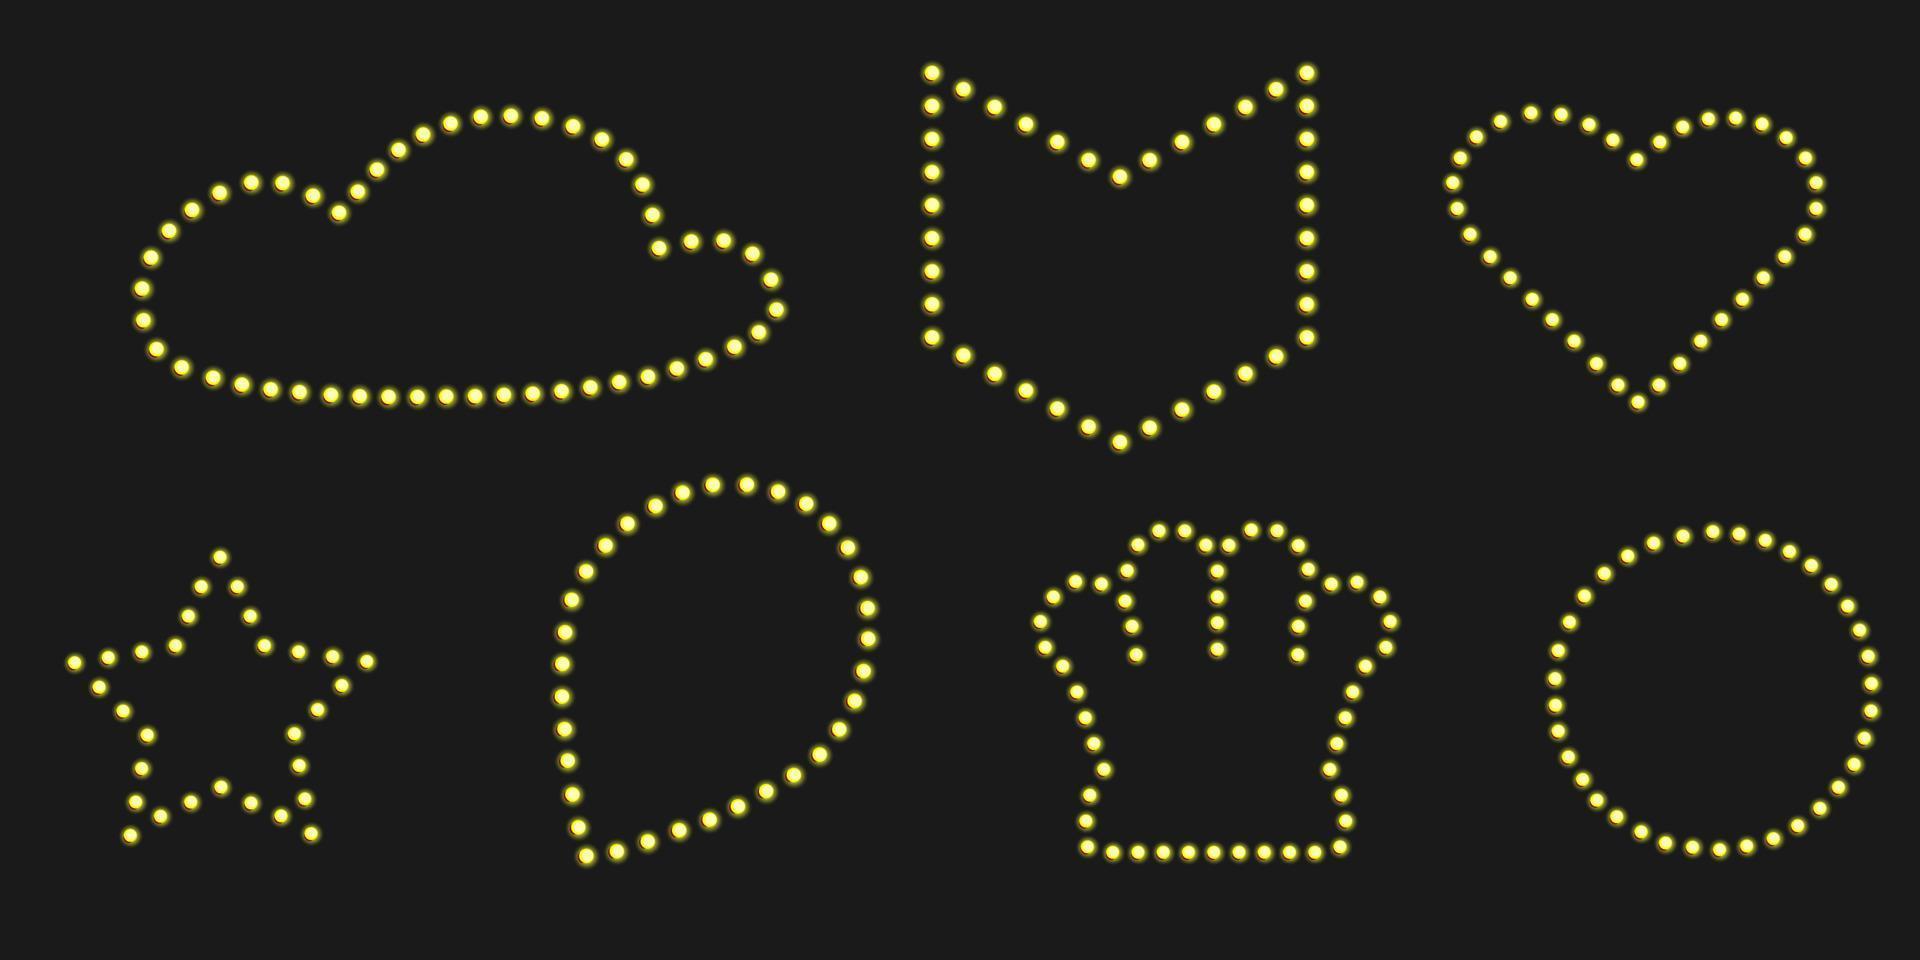 Goldkrone Festzelt glänzendes Abzeichen. Black Friday Banner für Luxus-Event-Design. Stiftlicht mit Stern- und Herzrahmen. vektor